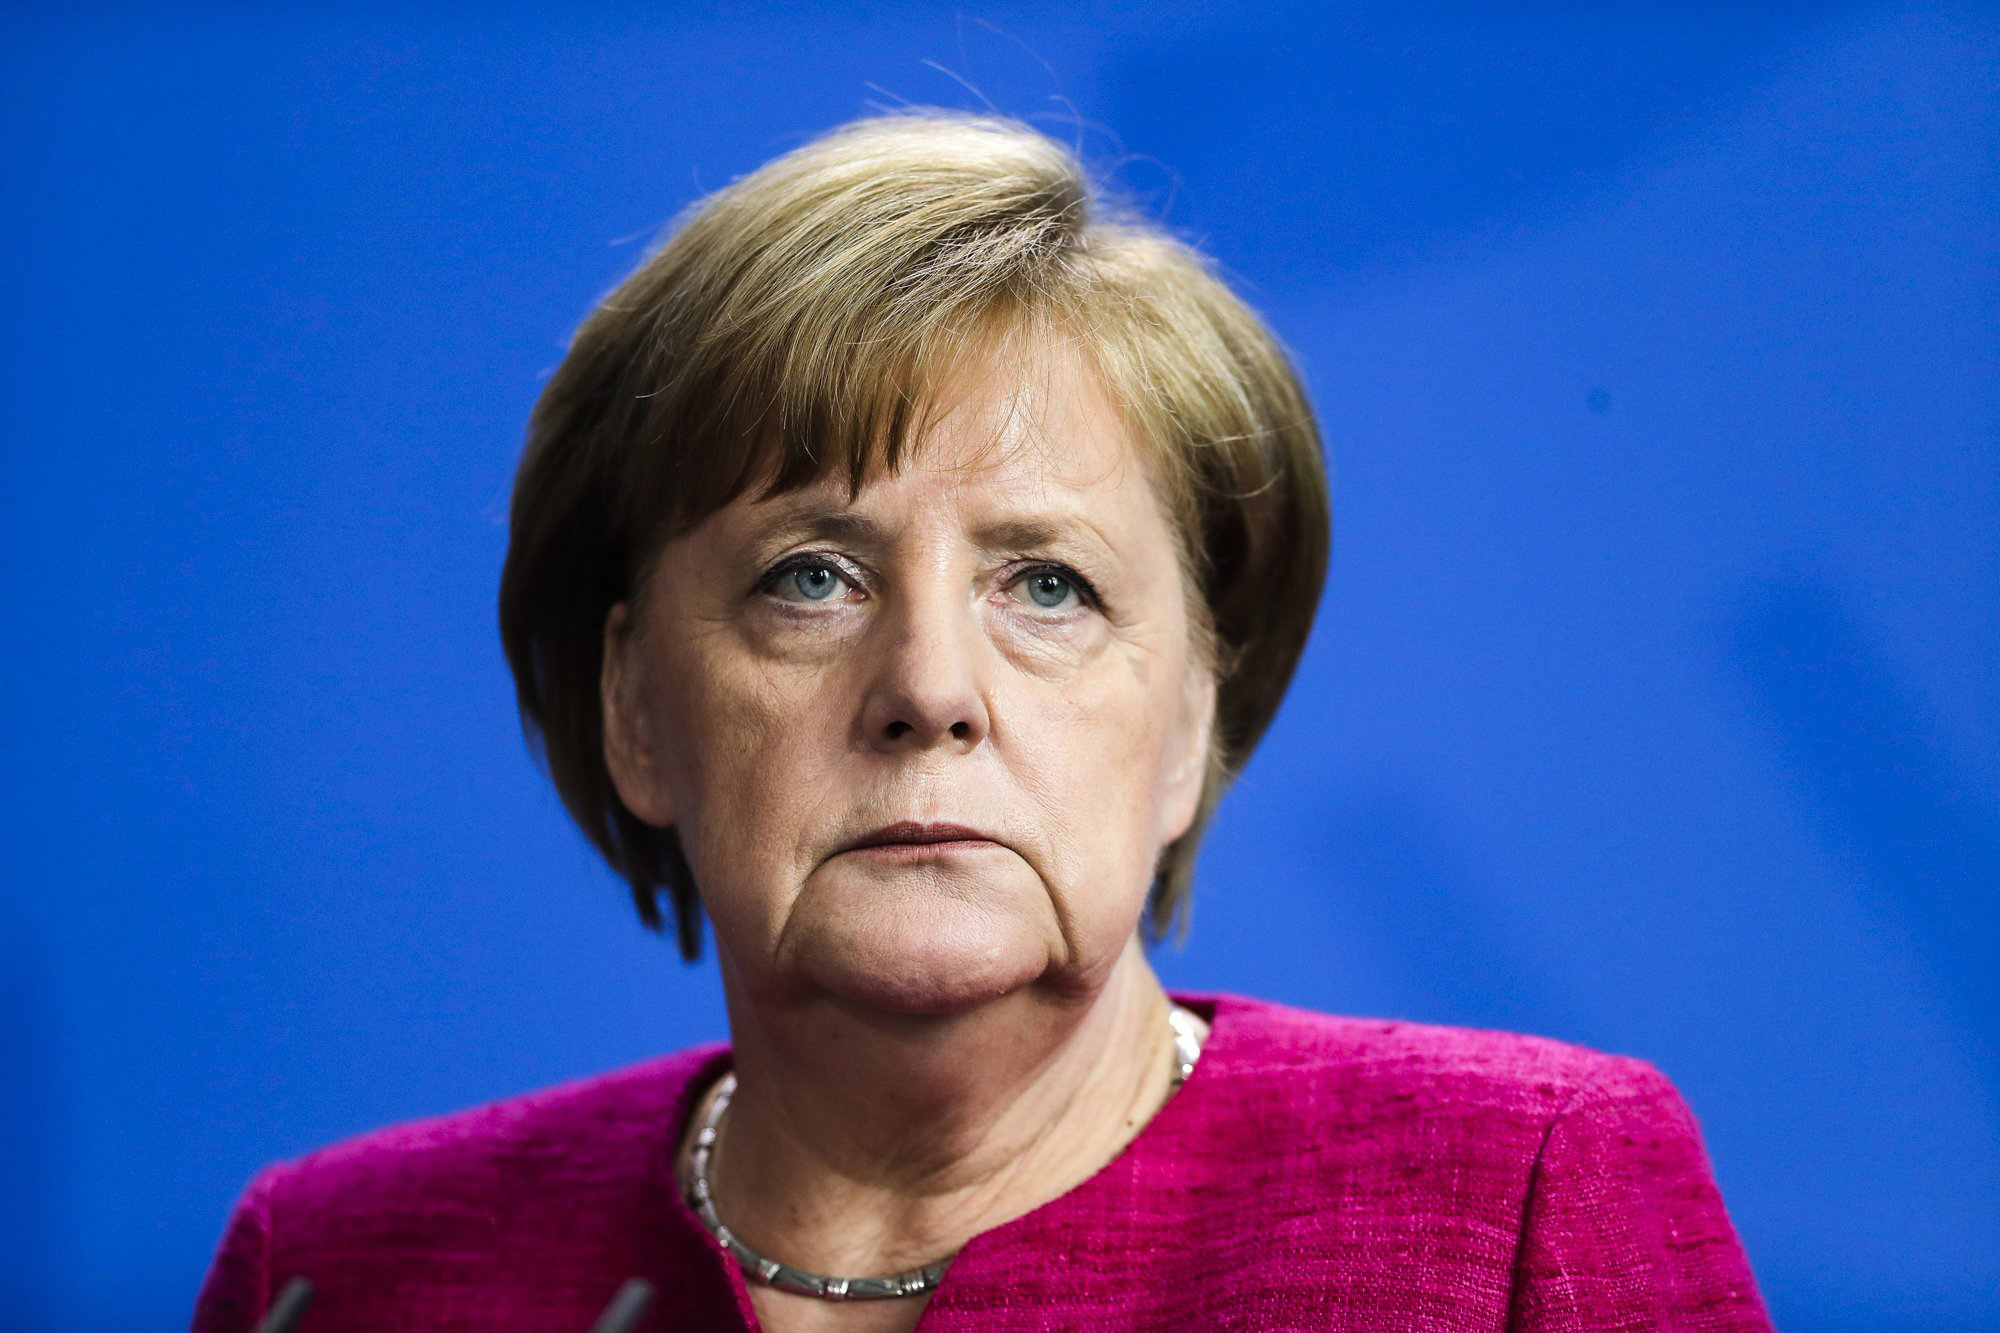  Меркель: Ливия не должна попасть в ловушку прокси-войны, как это произошло в Сирии